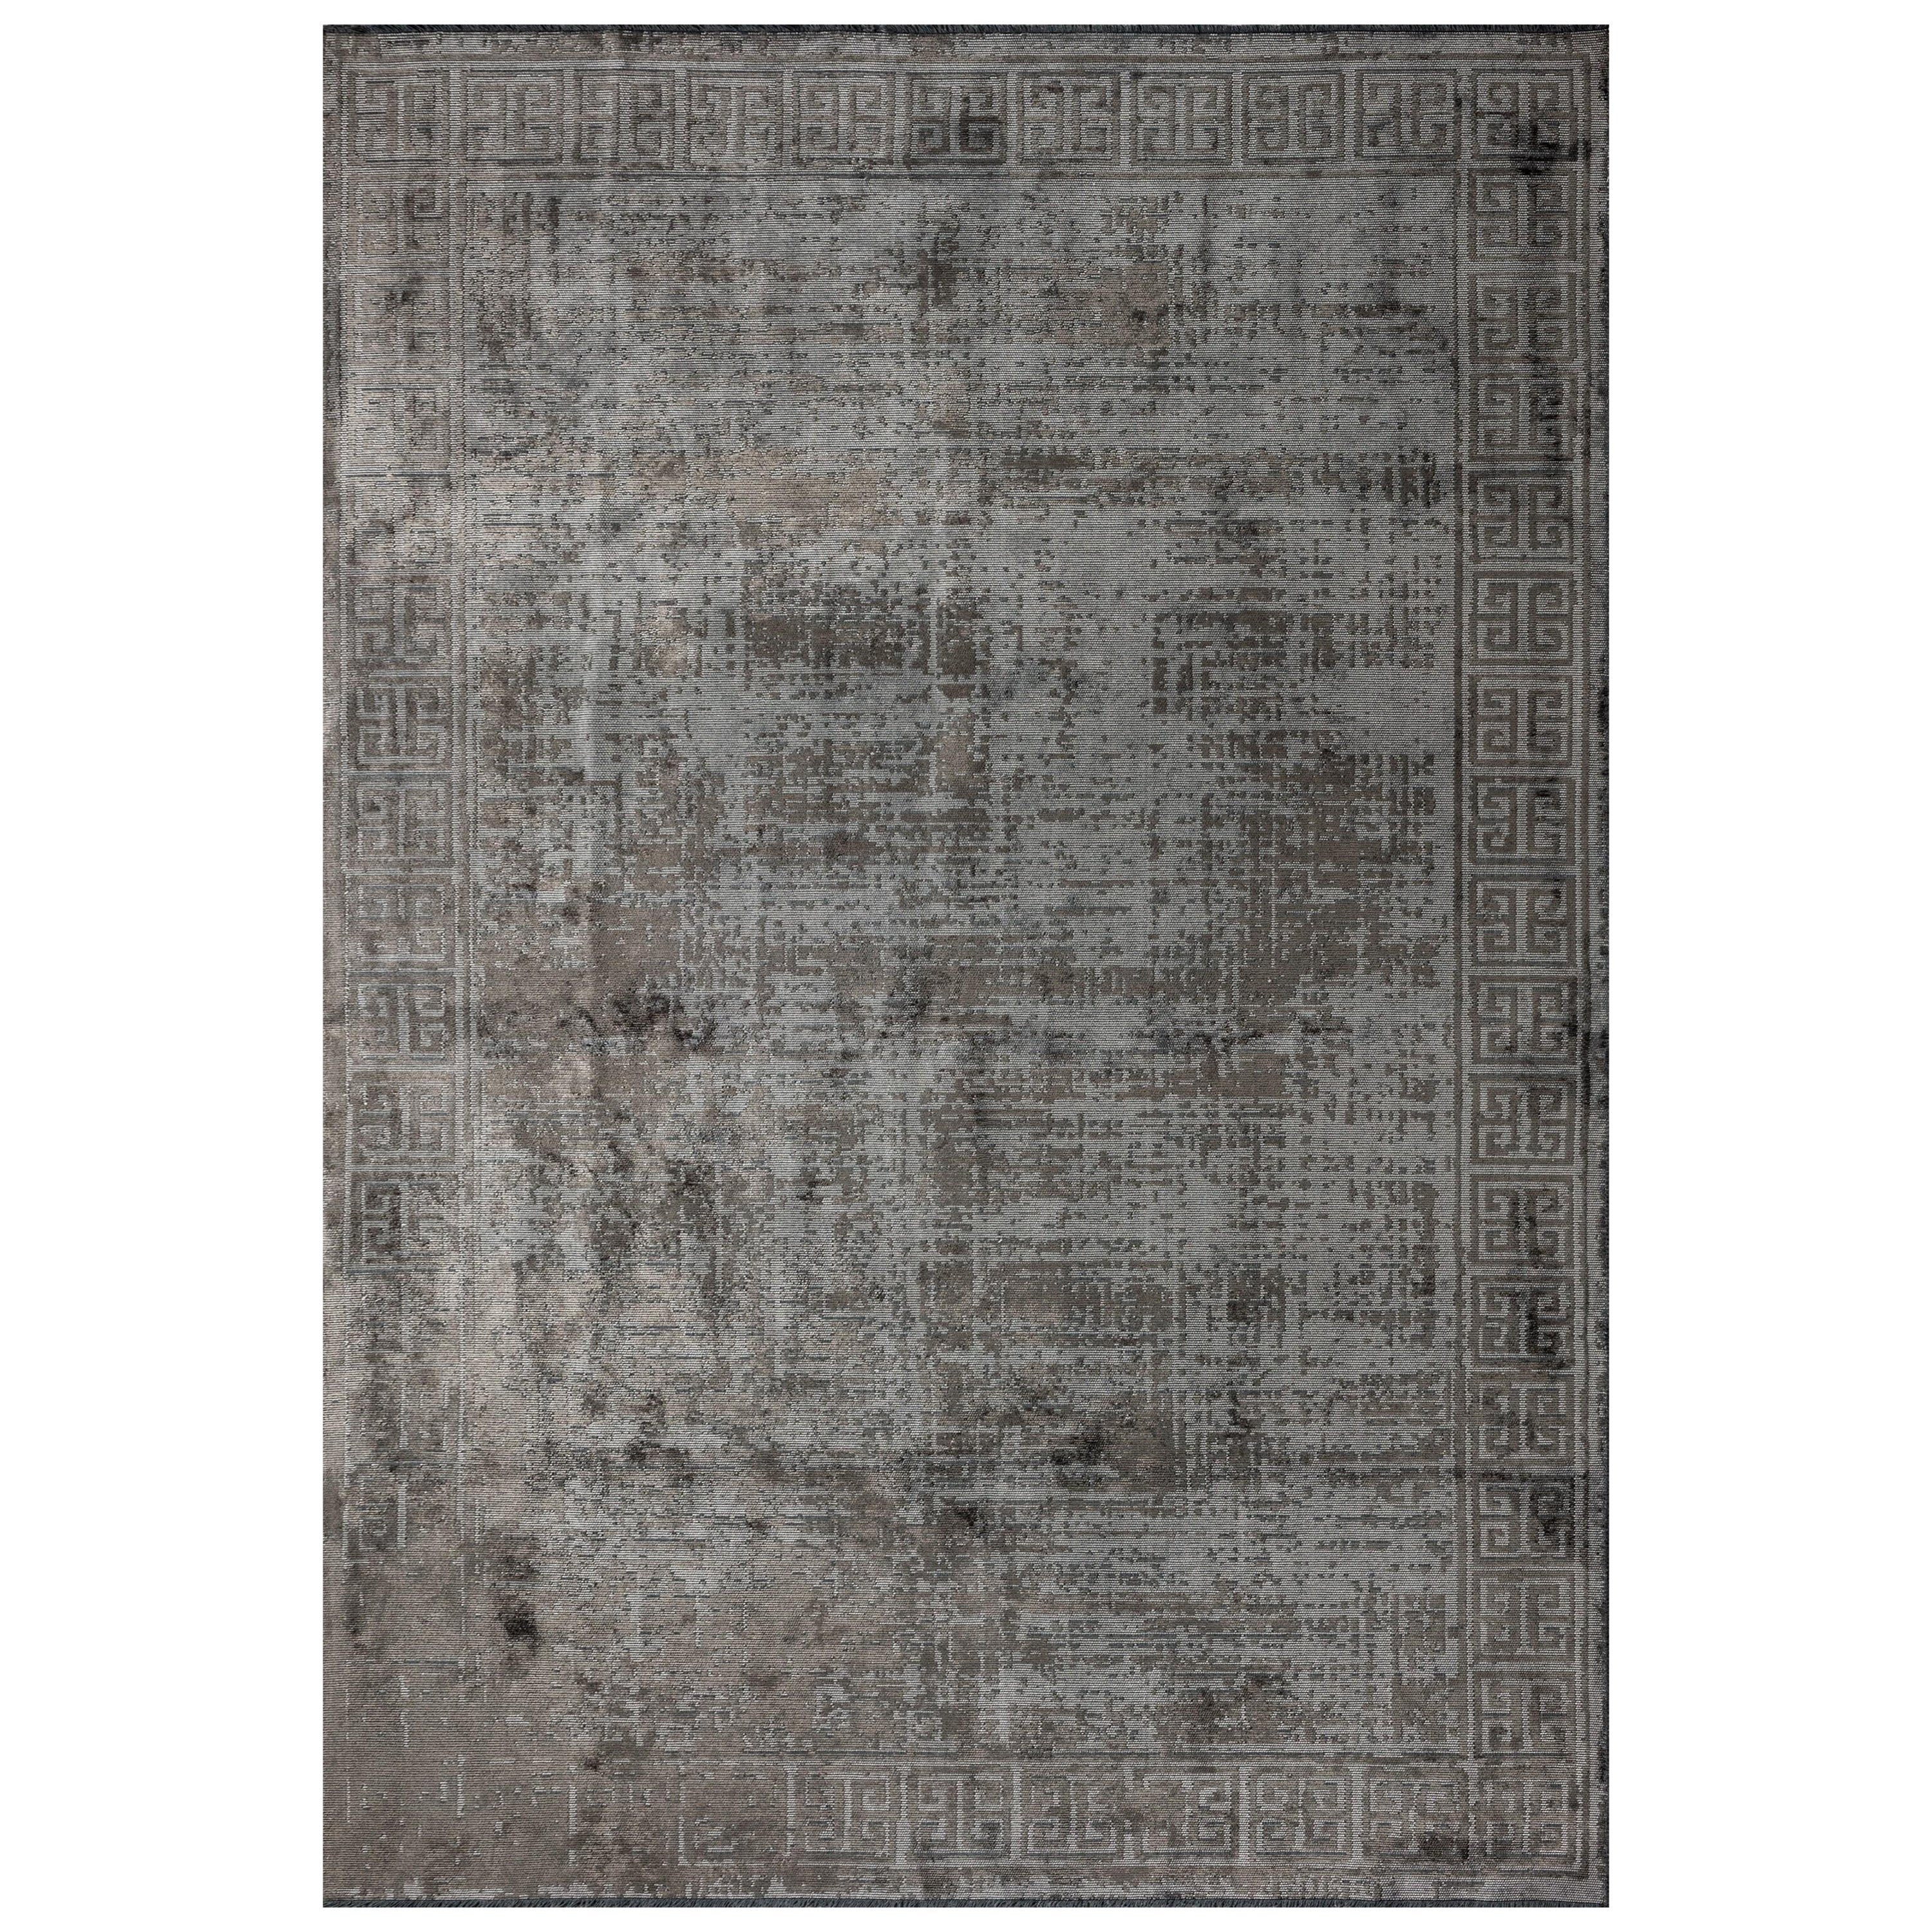 Im Angebot: Moderner luxuriöser Camouflage-Teppich,  (Grau)